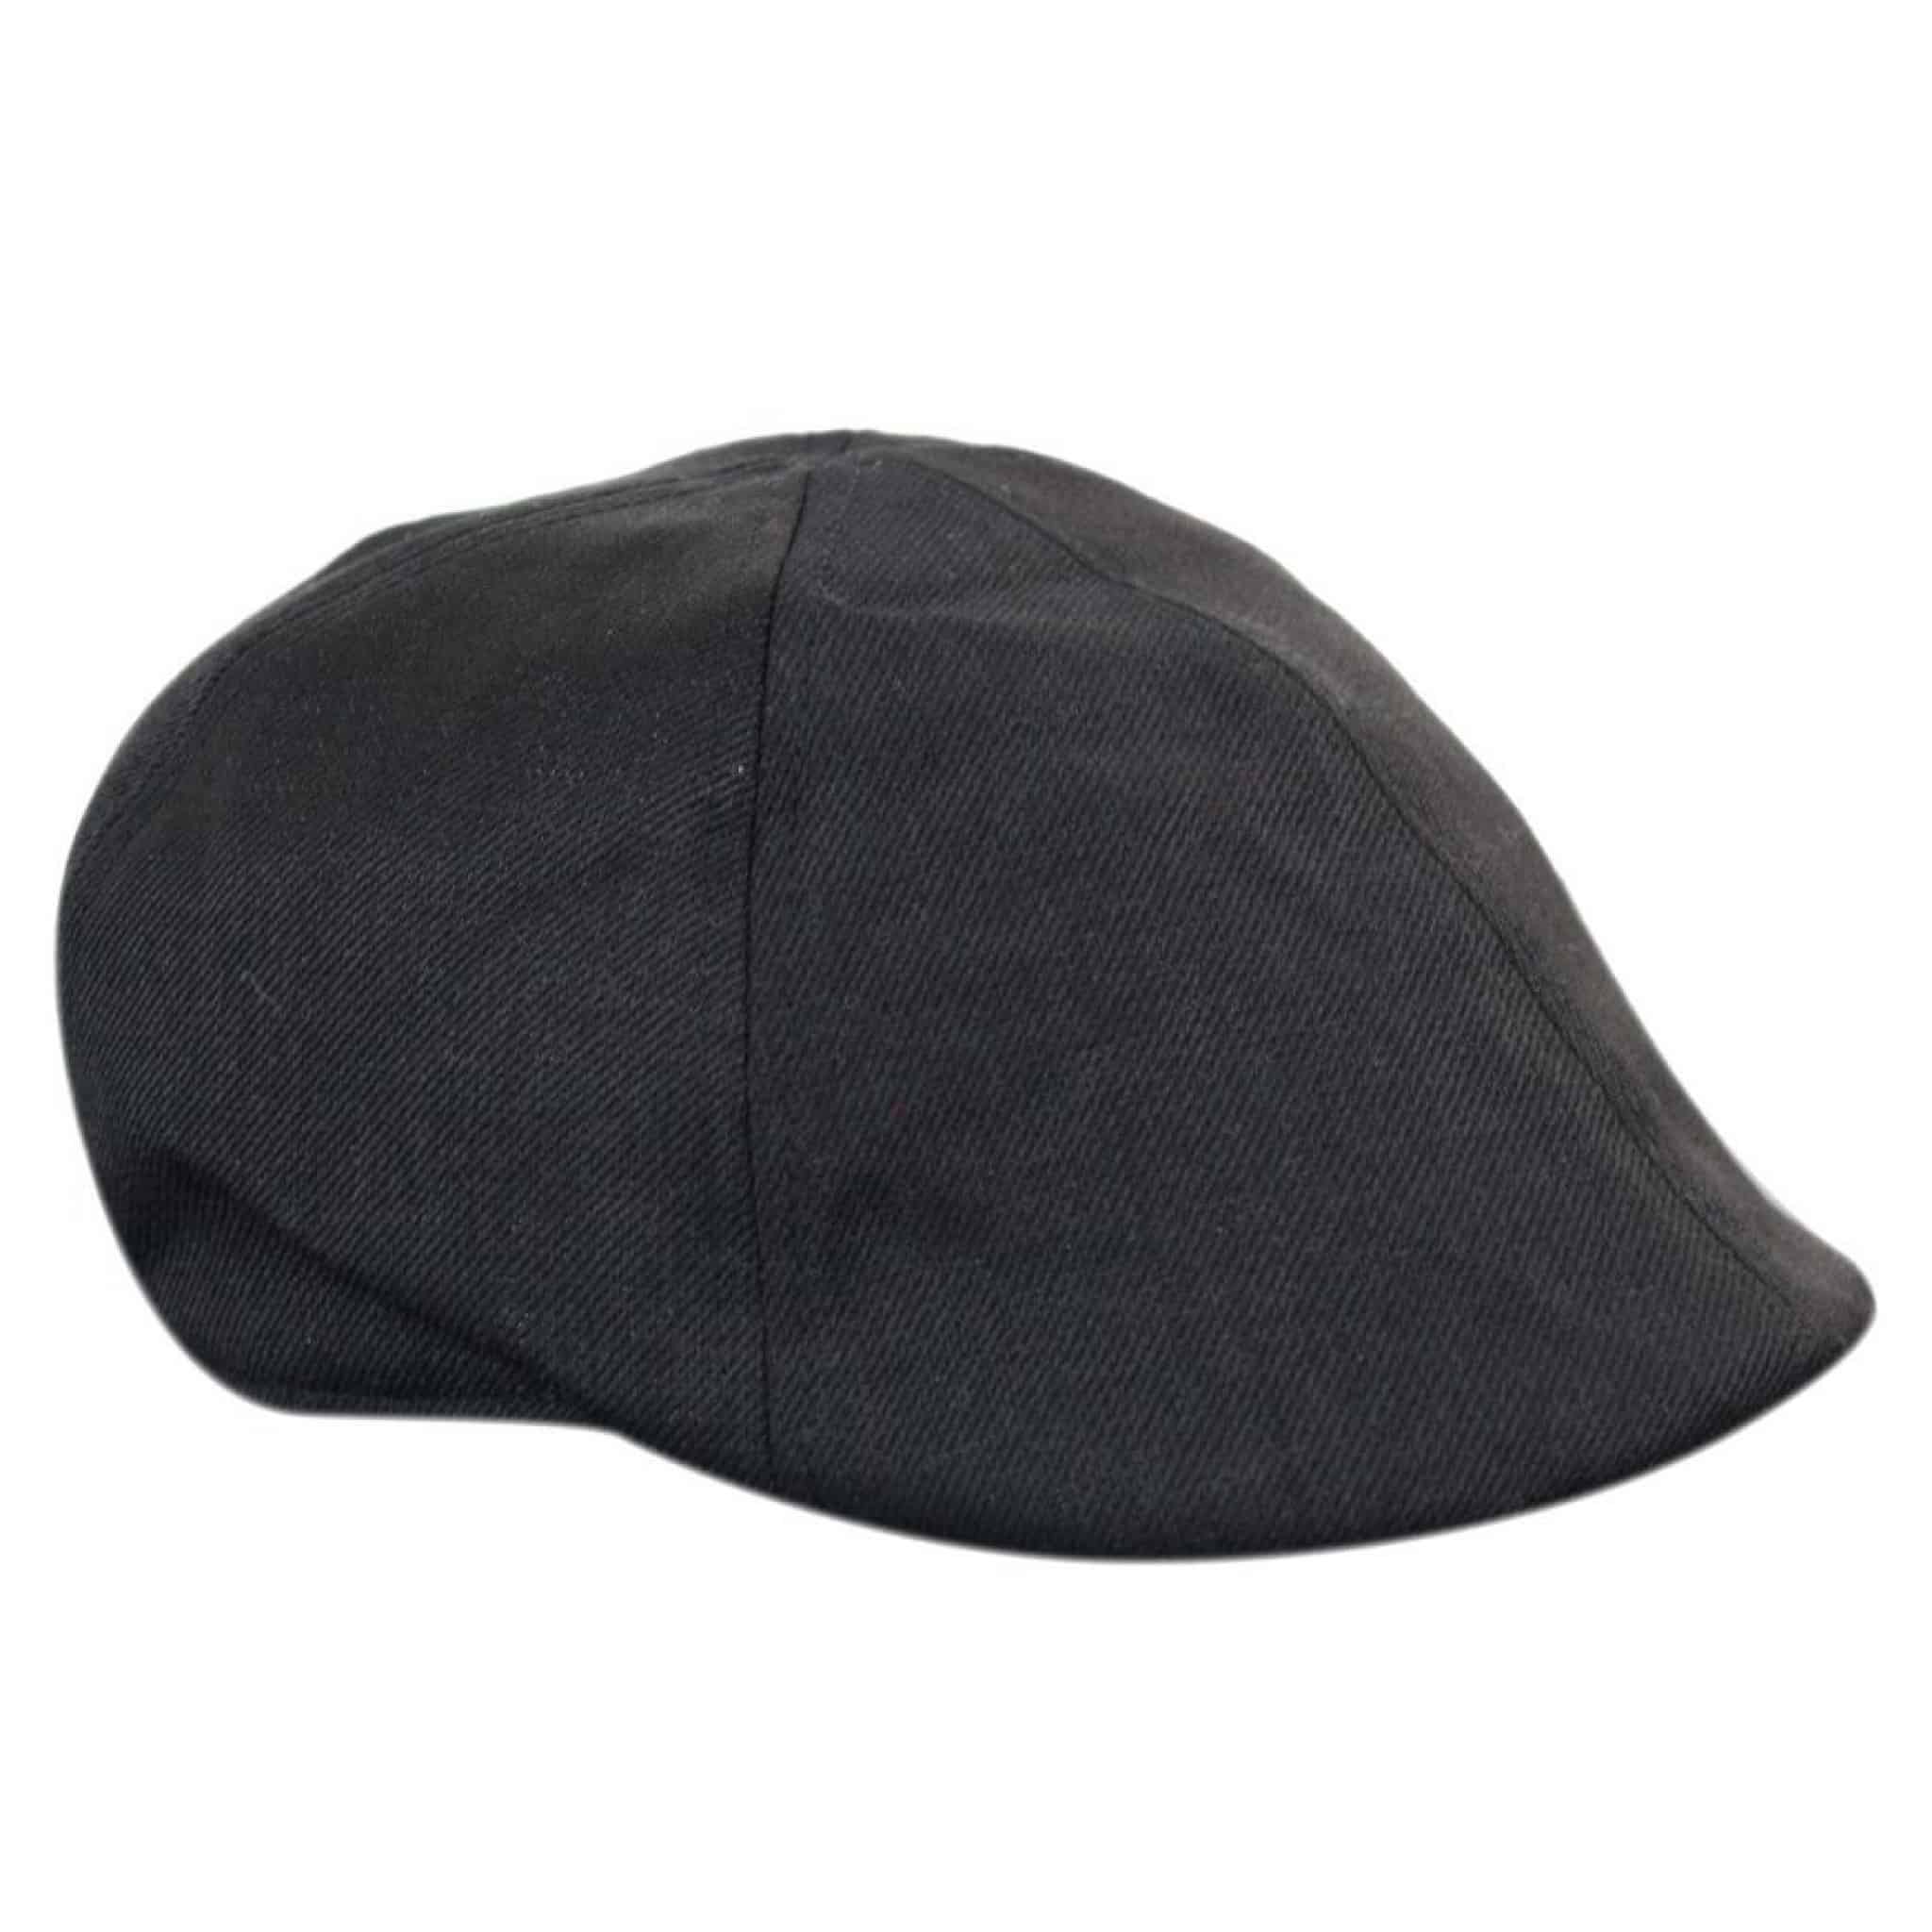 Marc Darcy Rayford Mens Tweed Vintage Retro Grandad Flat Caps Hats ...